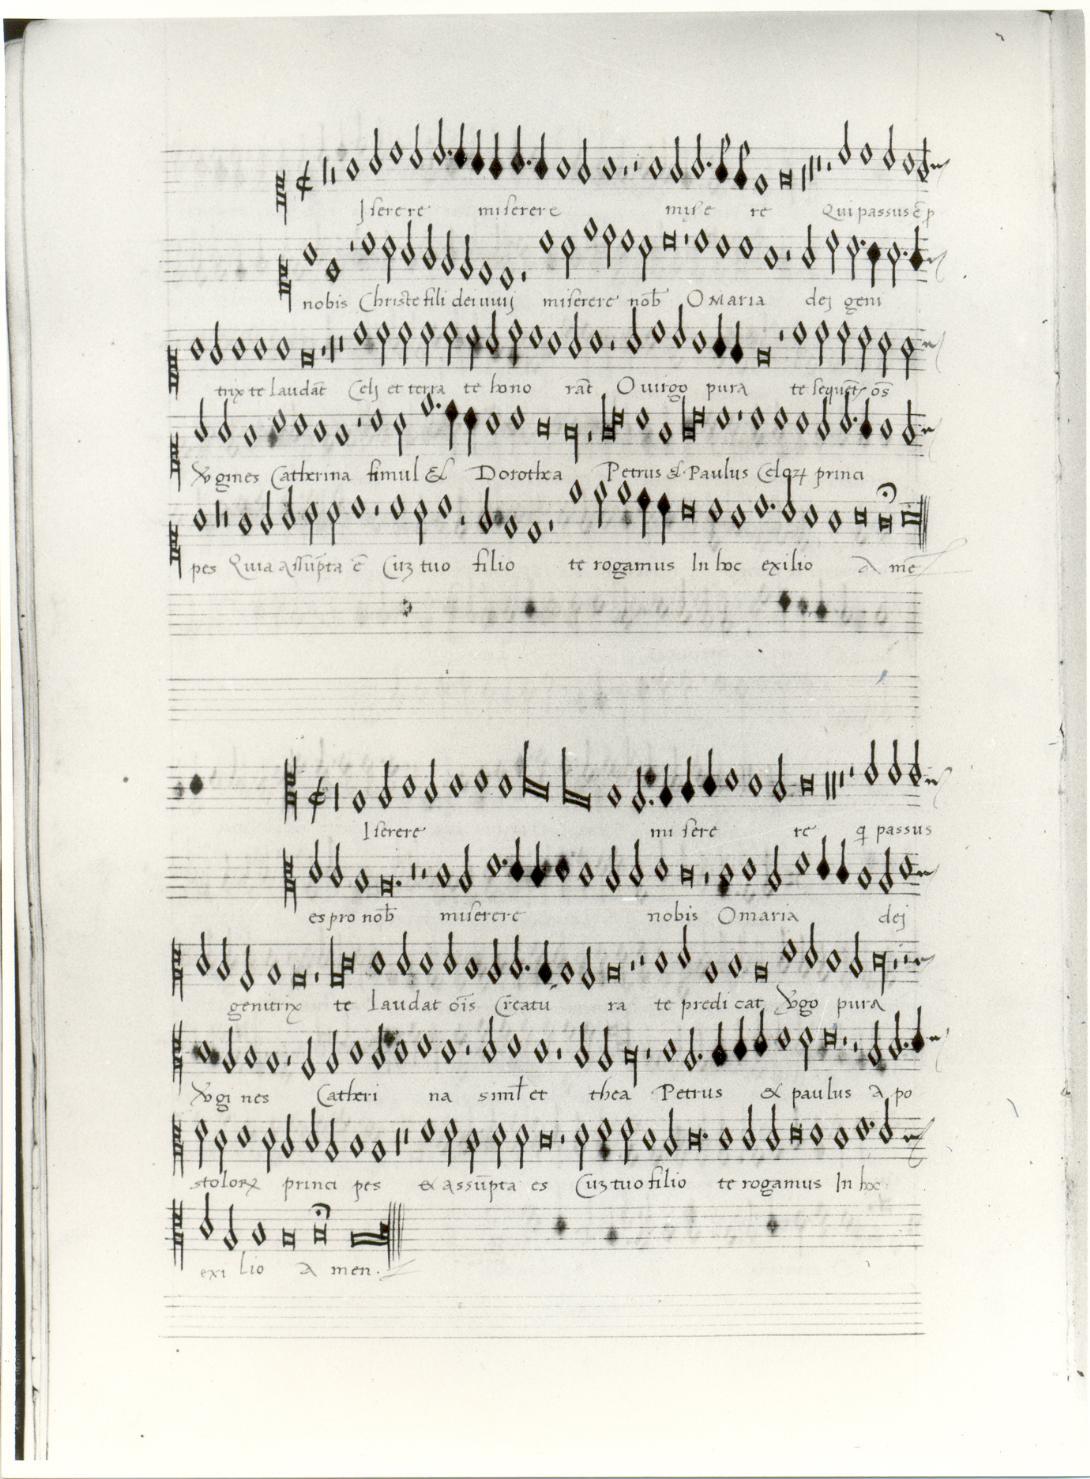 libretto - ambito friulano (fine/inizio secc. XVI/ XVII)